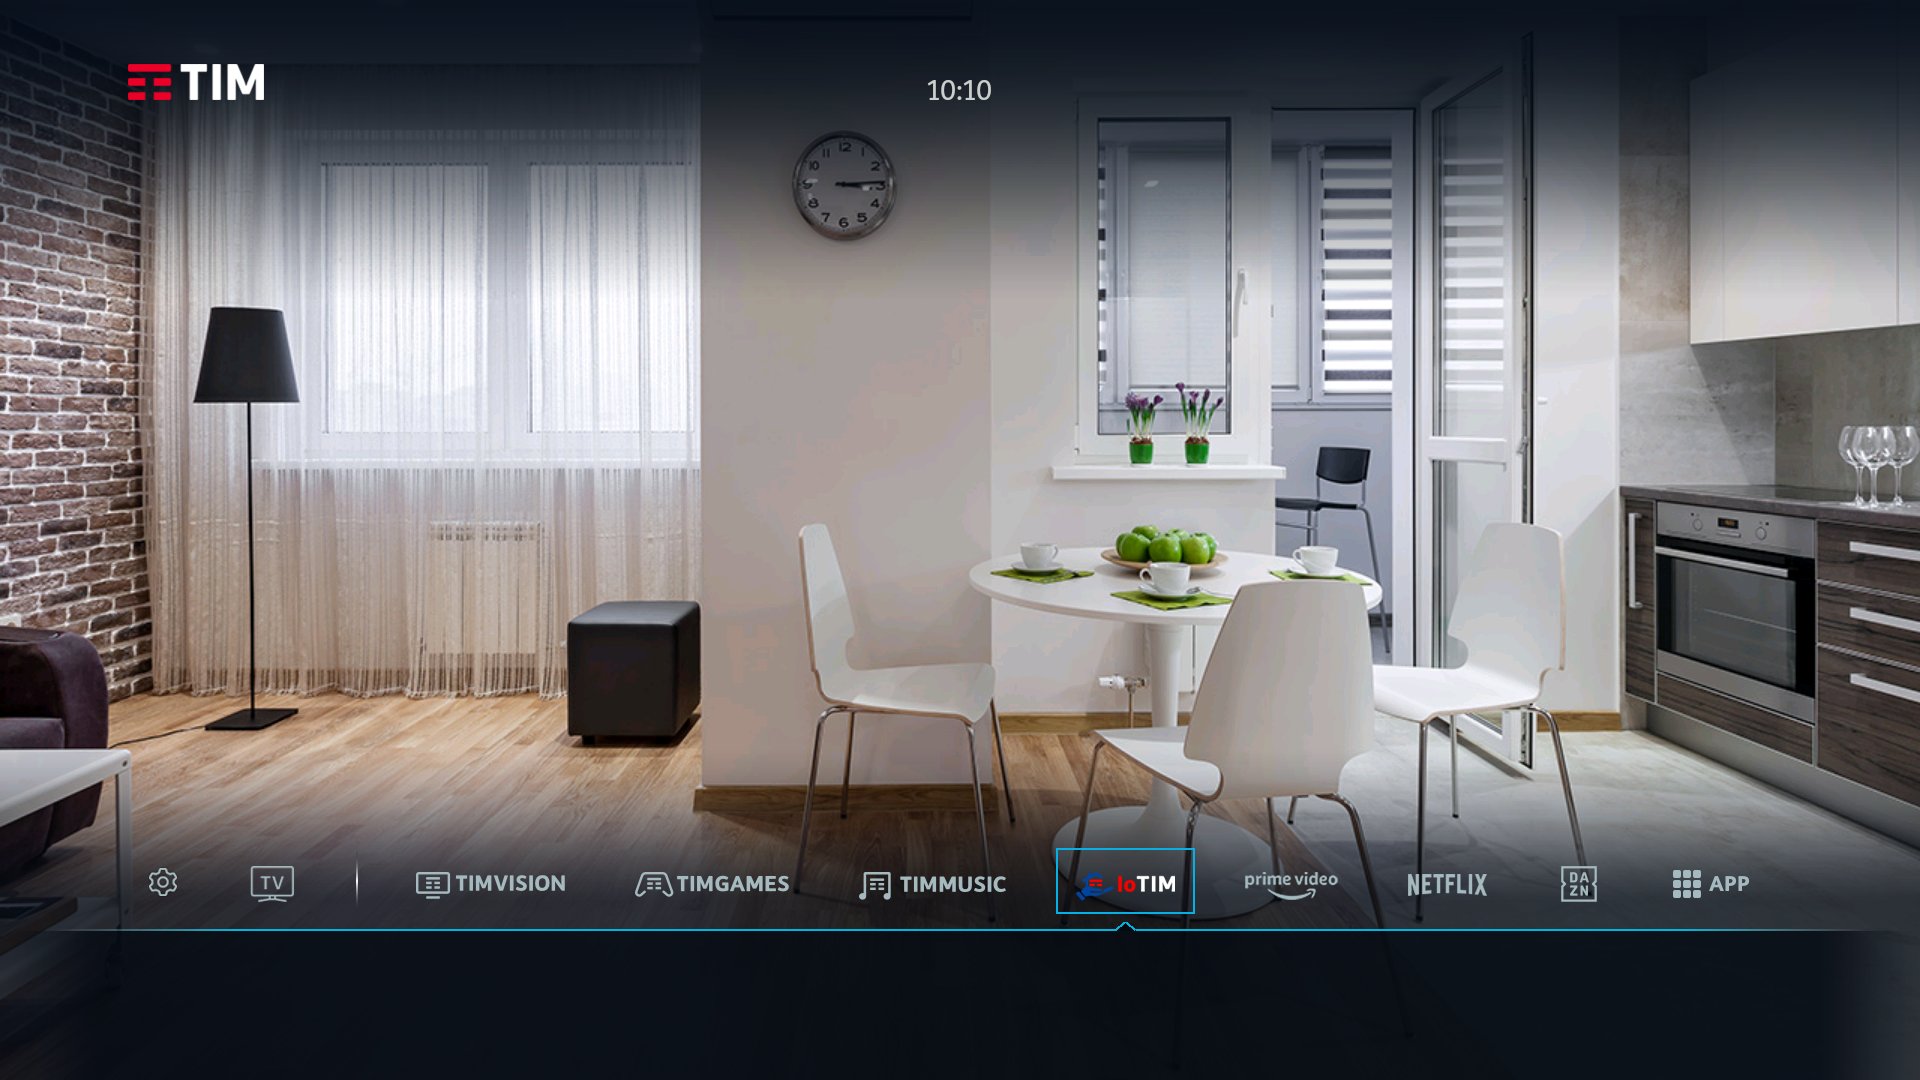 IoTIM, la smart home disponibile dalla TV di casa con nuovi servizi